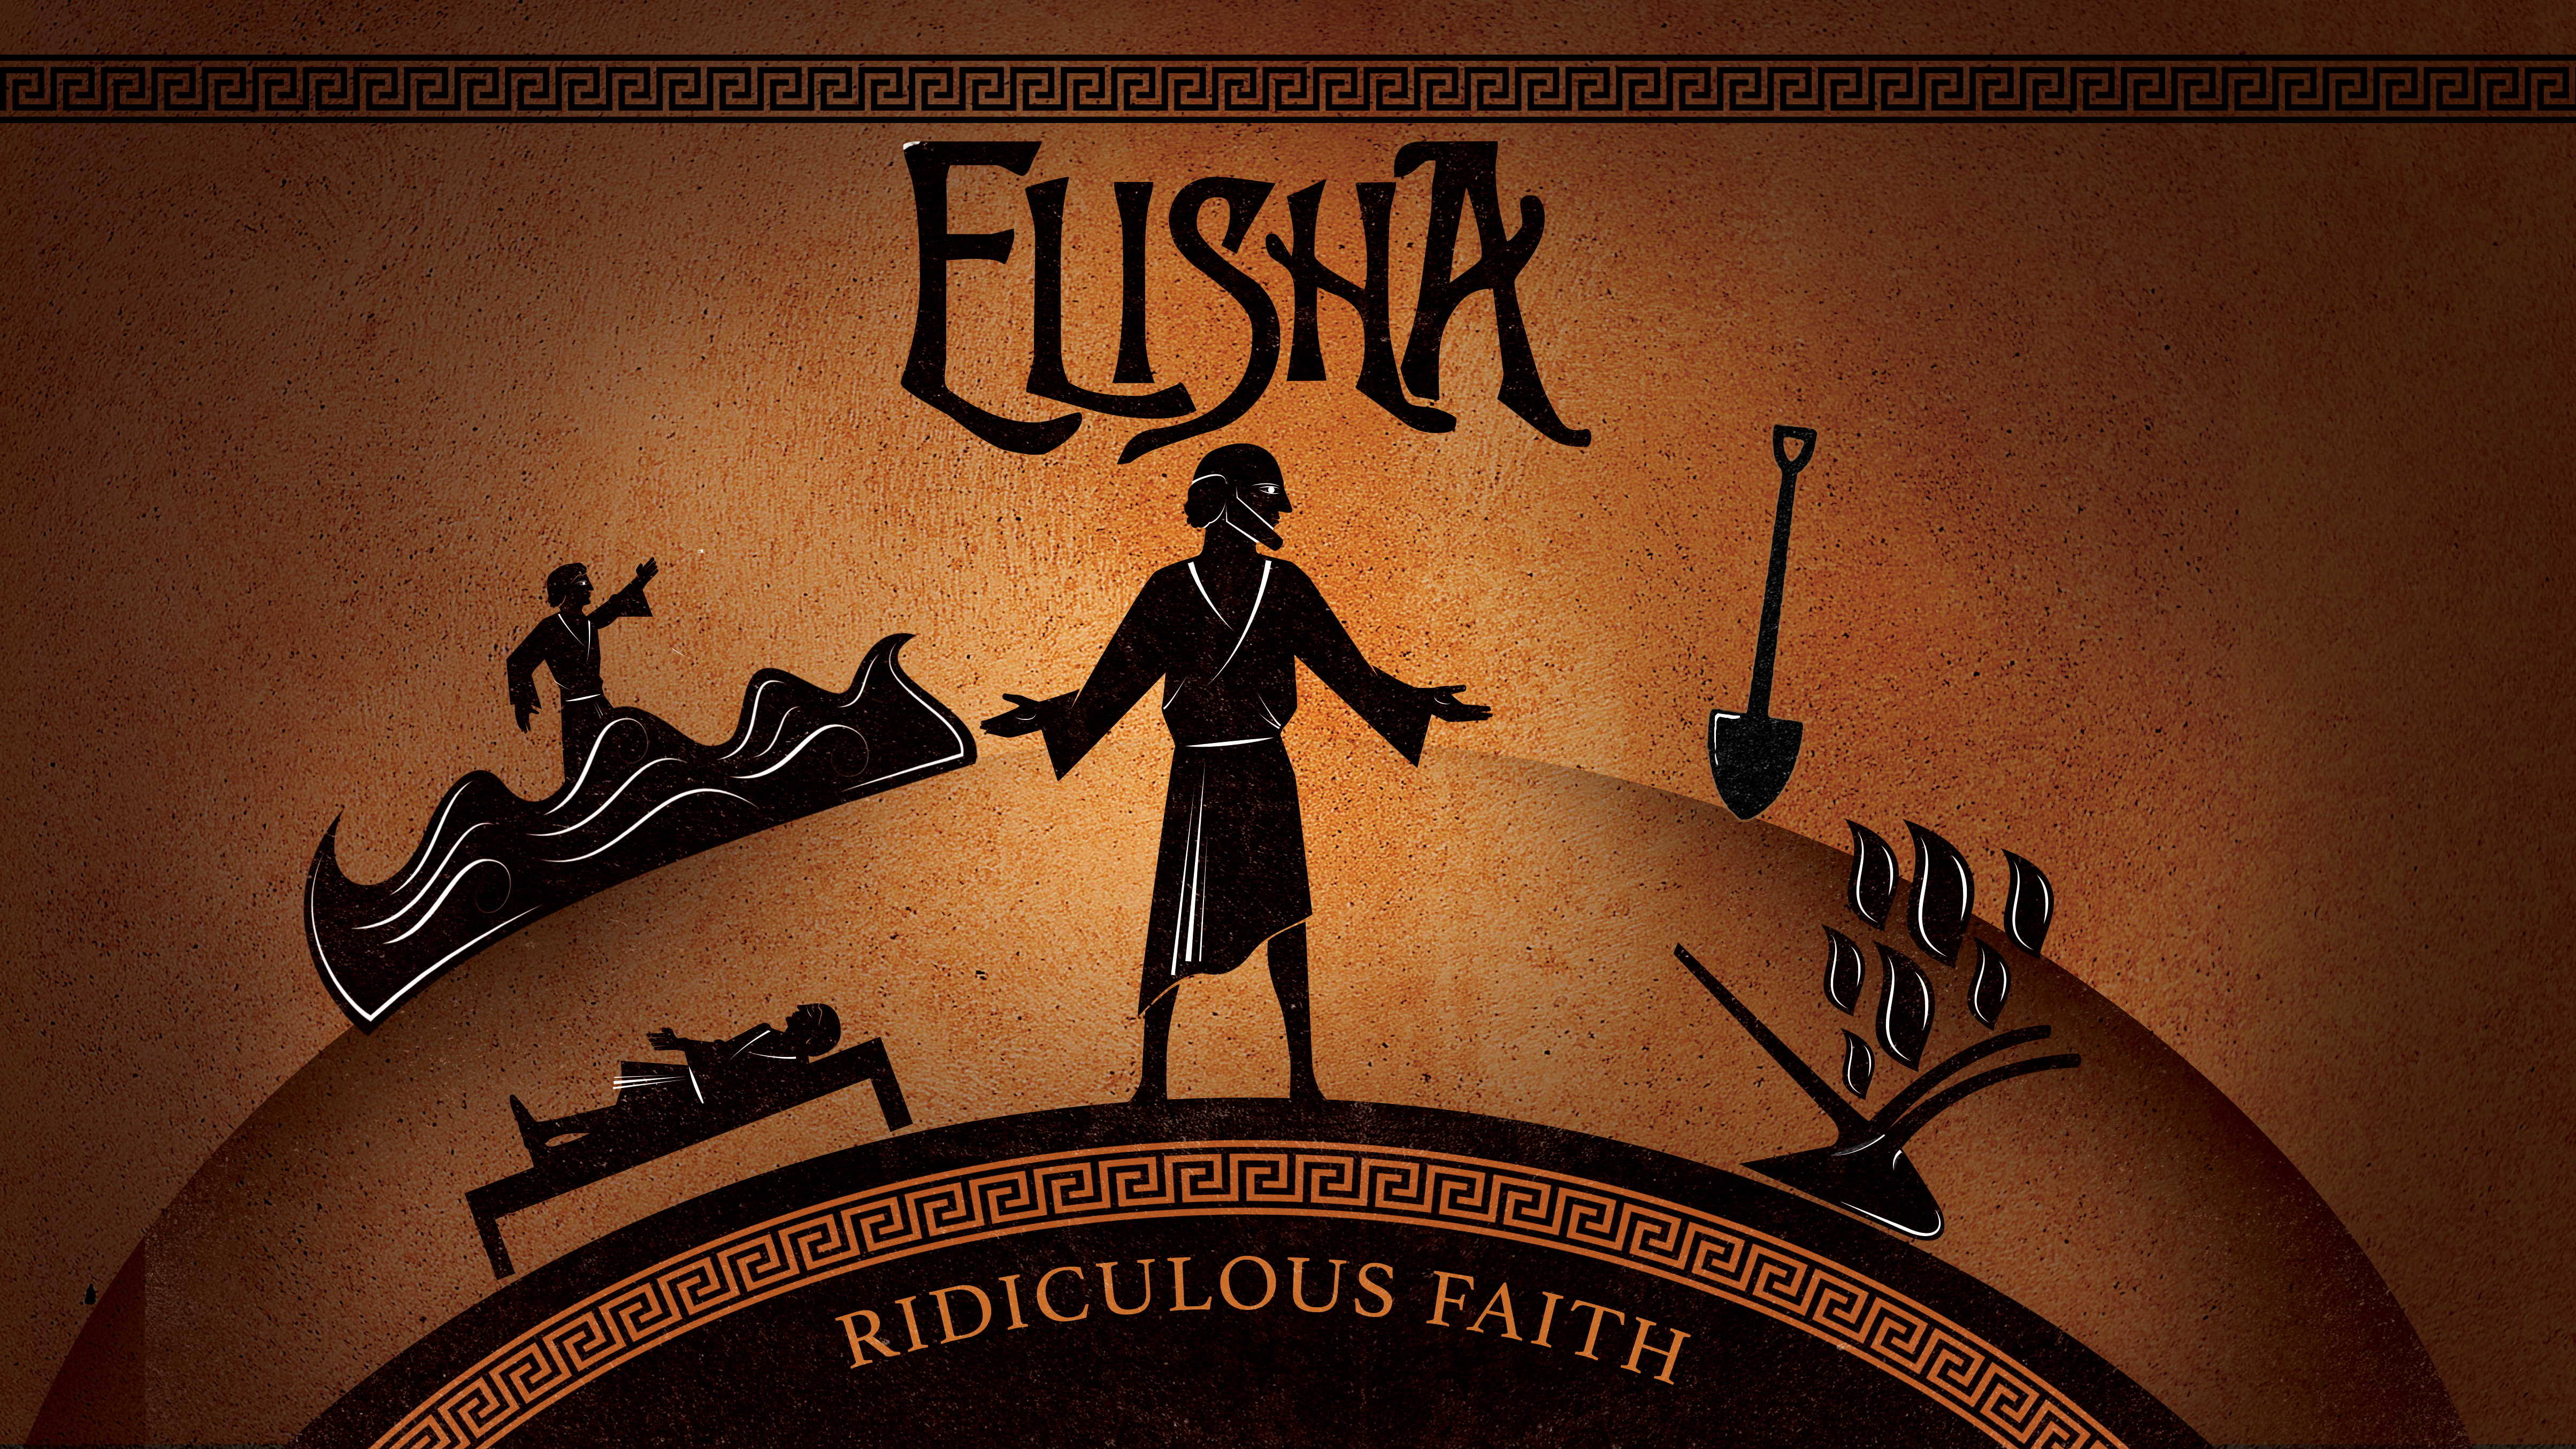 Elisha: Ridiculous Faith